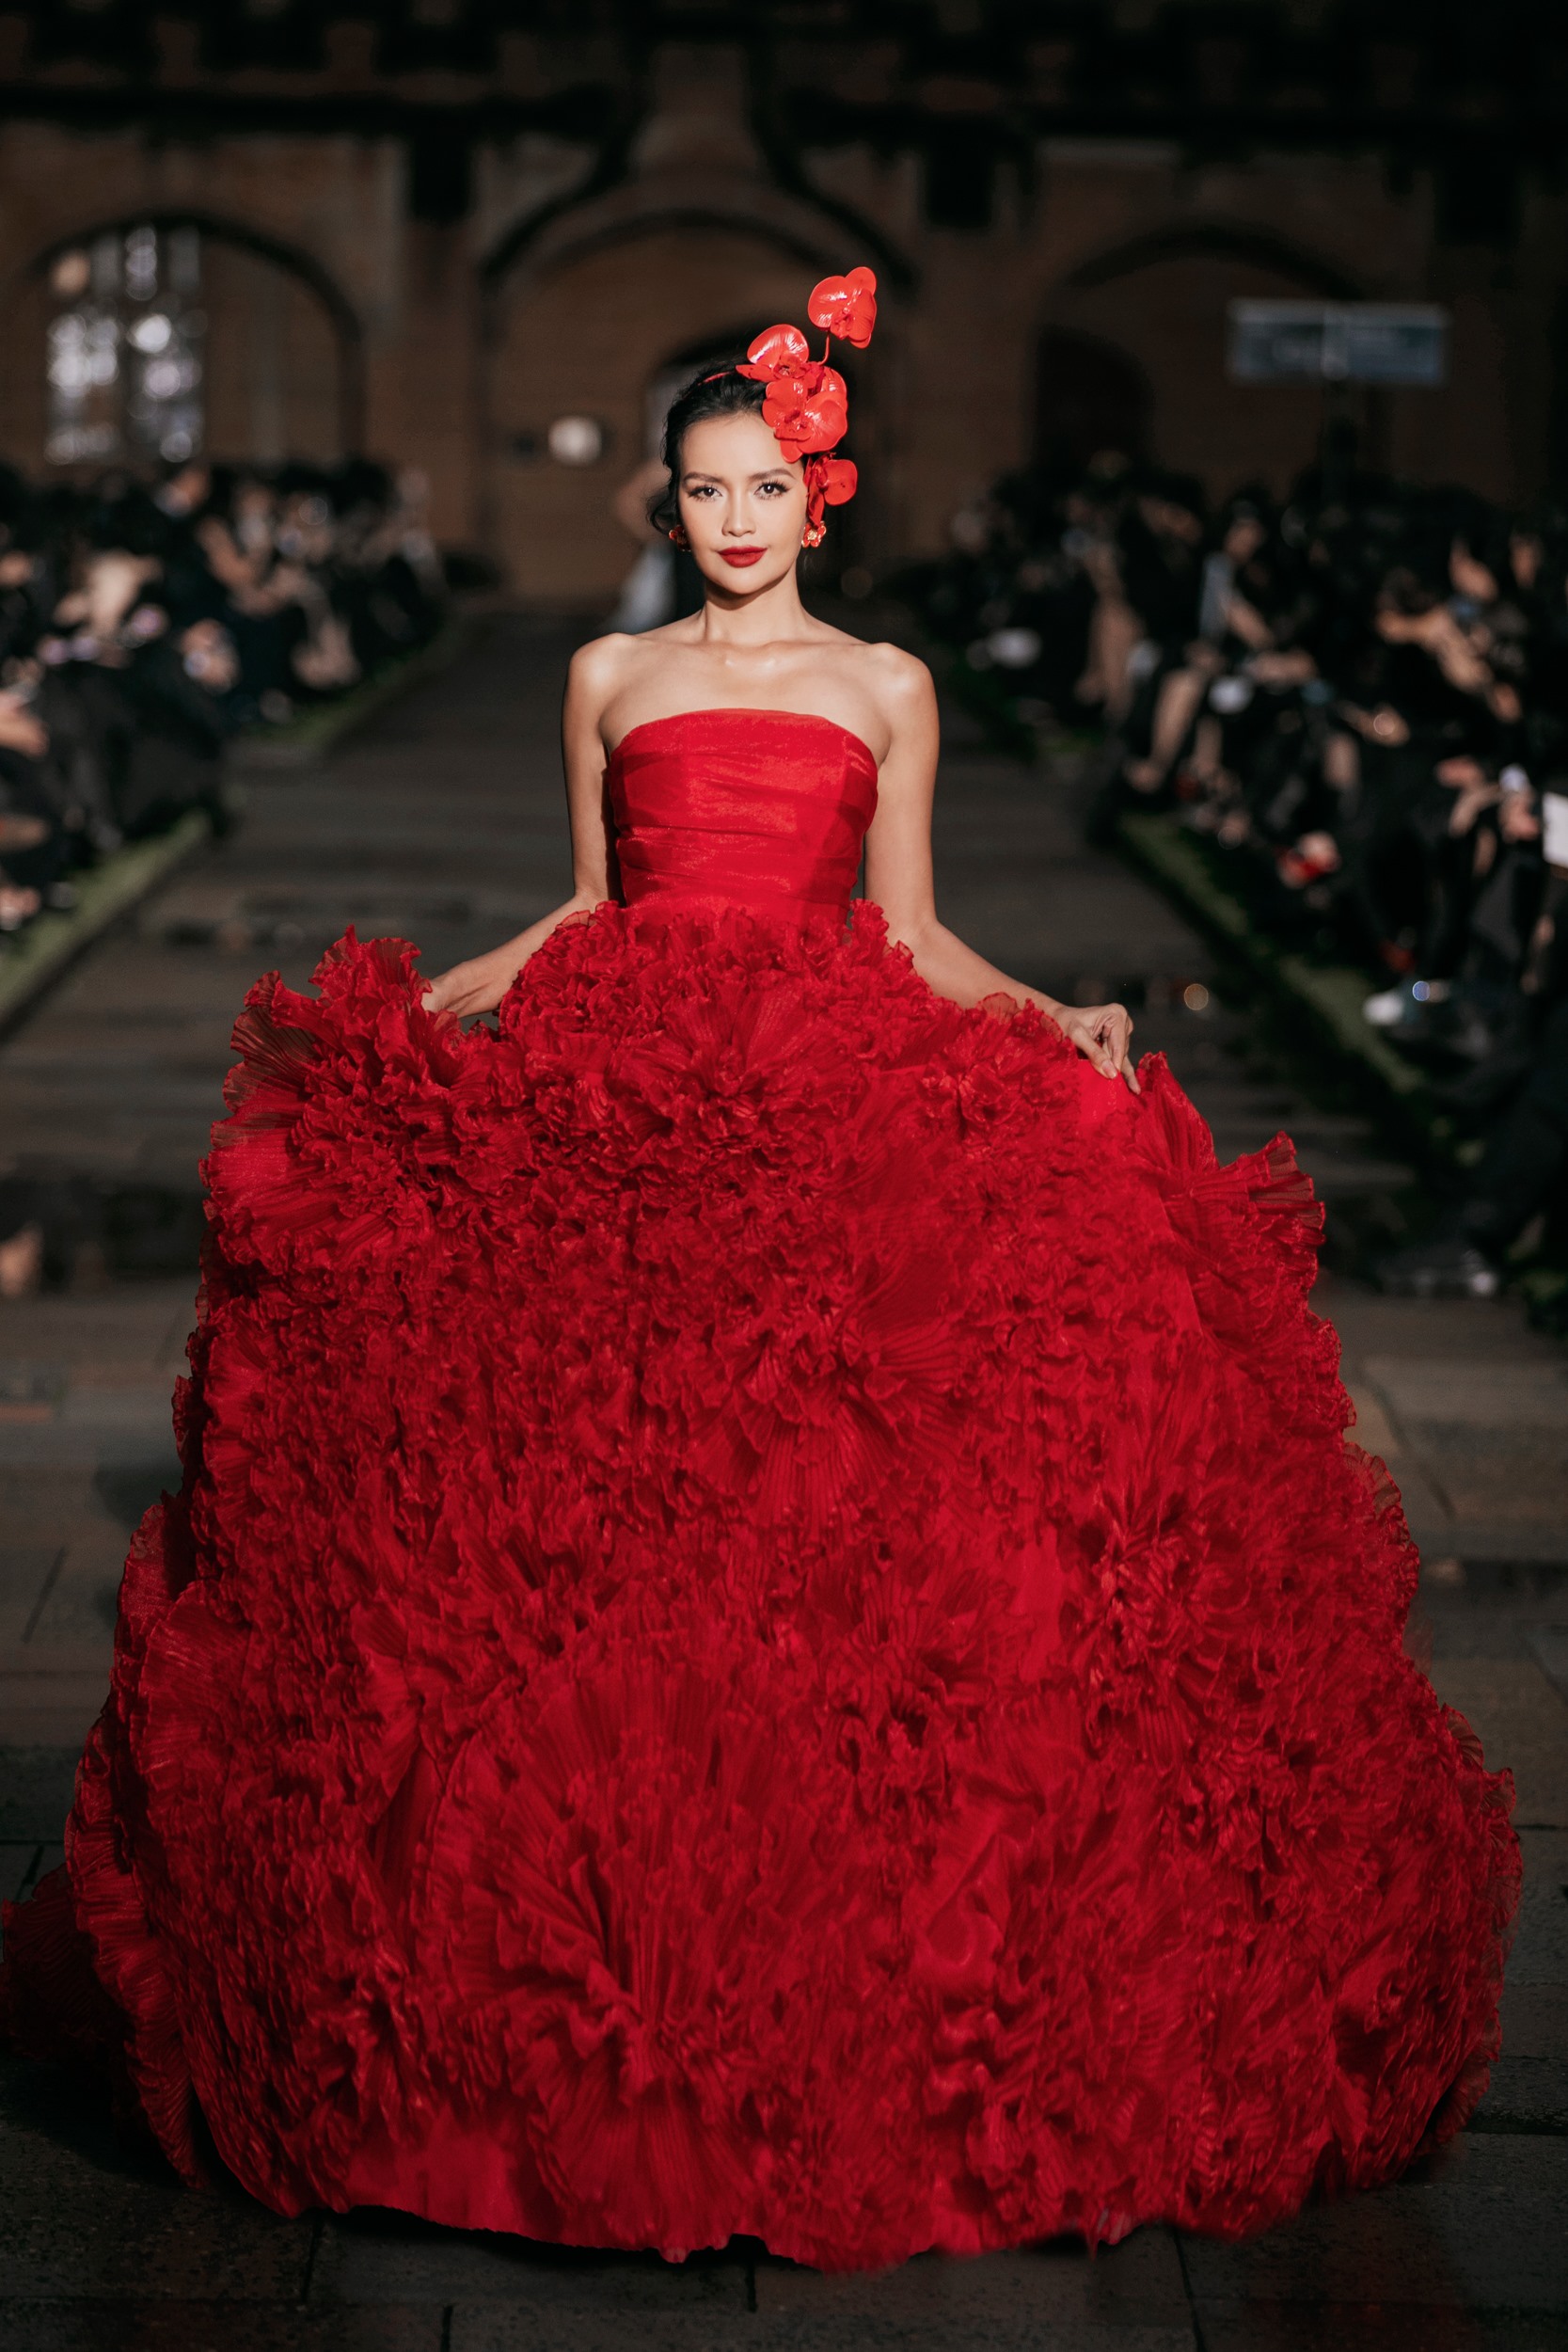 Hoa hậu Ngọc Châu khoe vẻ đẹp rực rỡ trong bộ đầm tông đỏ cầu kì. Ảnh: Kiếng Cận